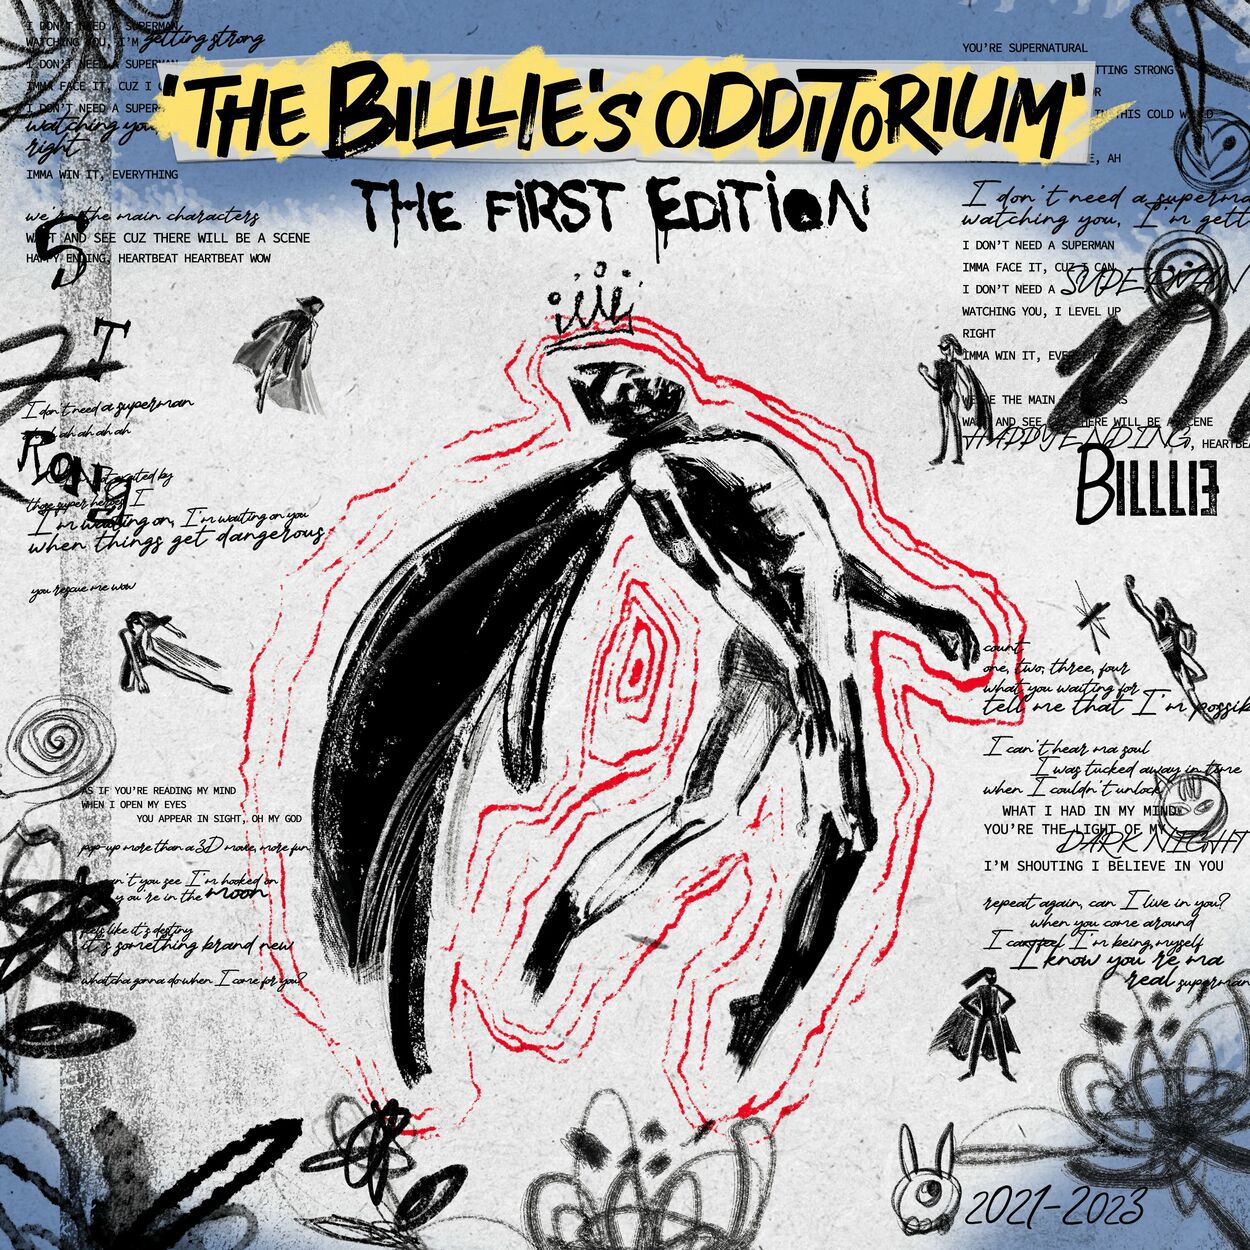 Billlie – ‘the Billlie’s odditorium’ the first edition – Single